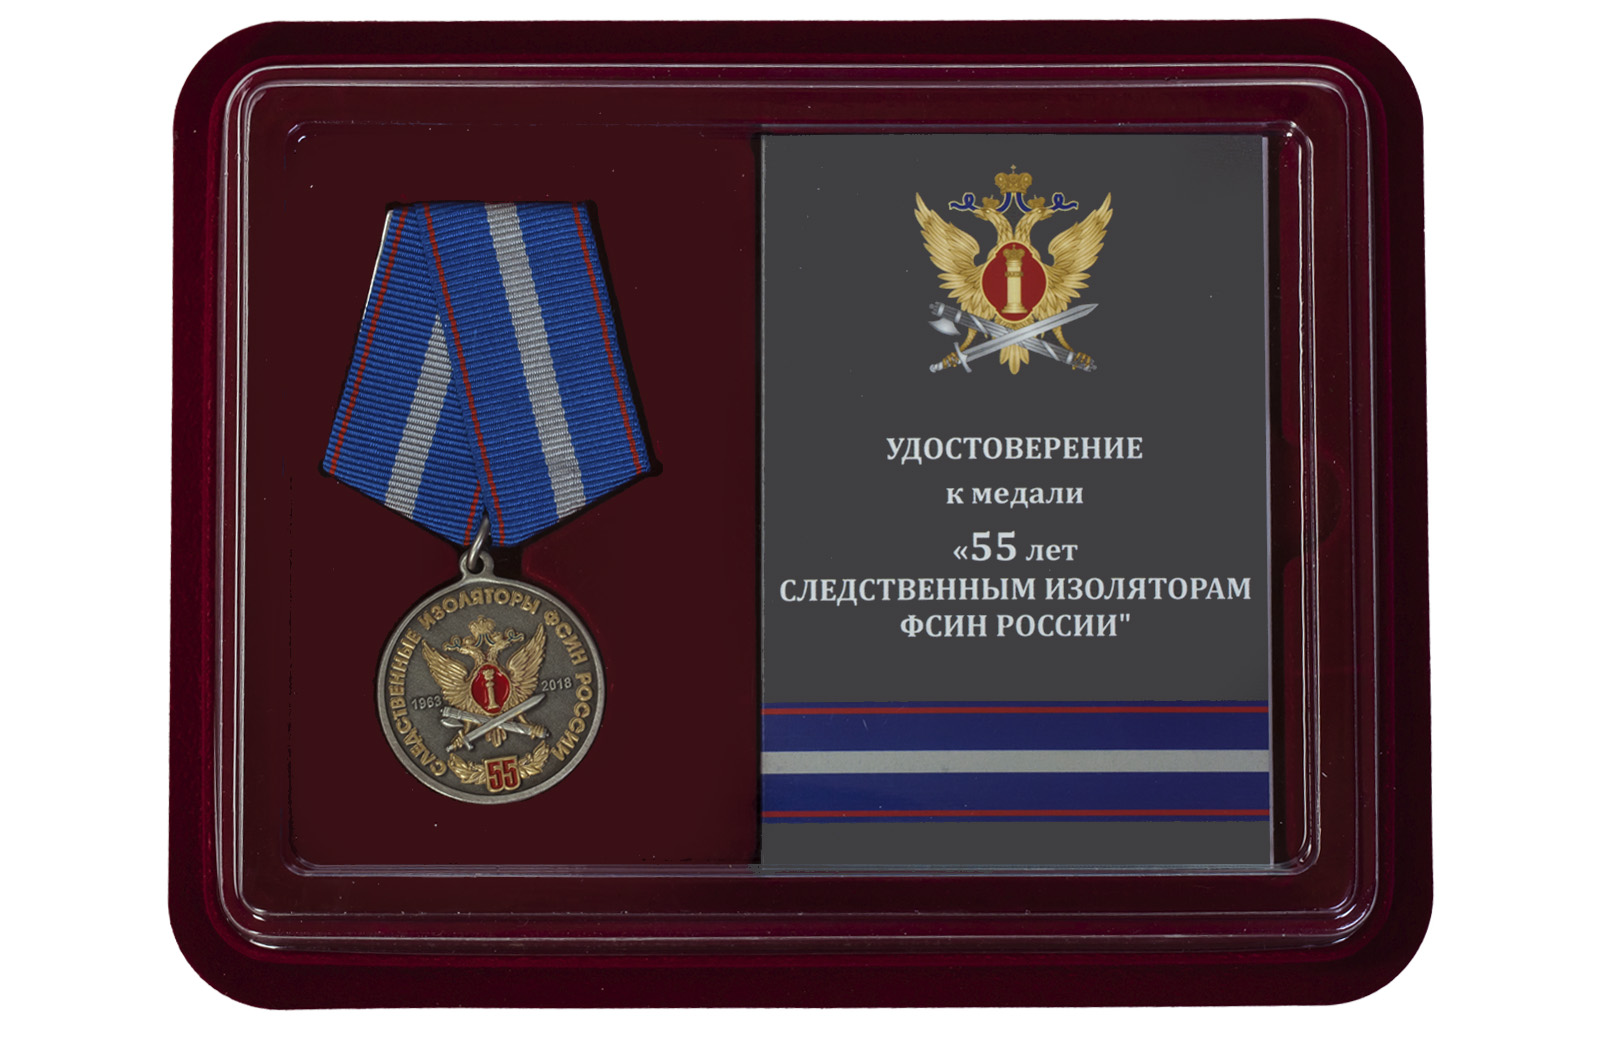 Купить памятную медаль 55 лет Следственным изоляторам ФСИН России оптом или в розницу